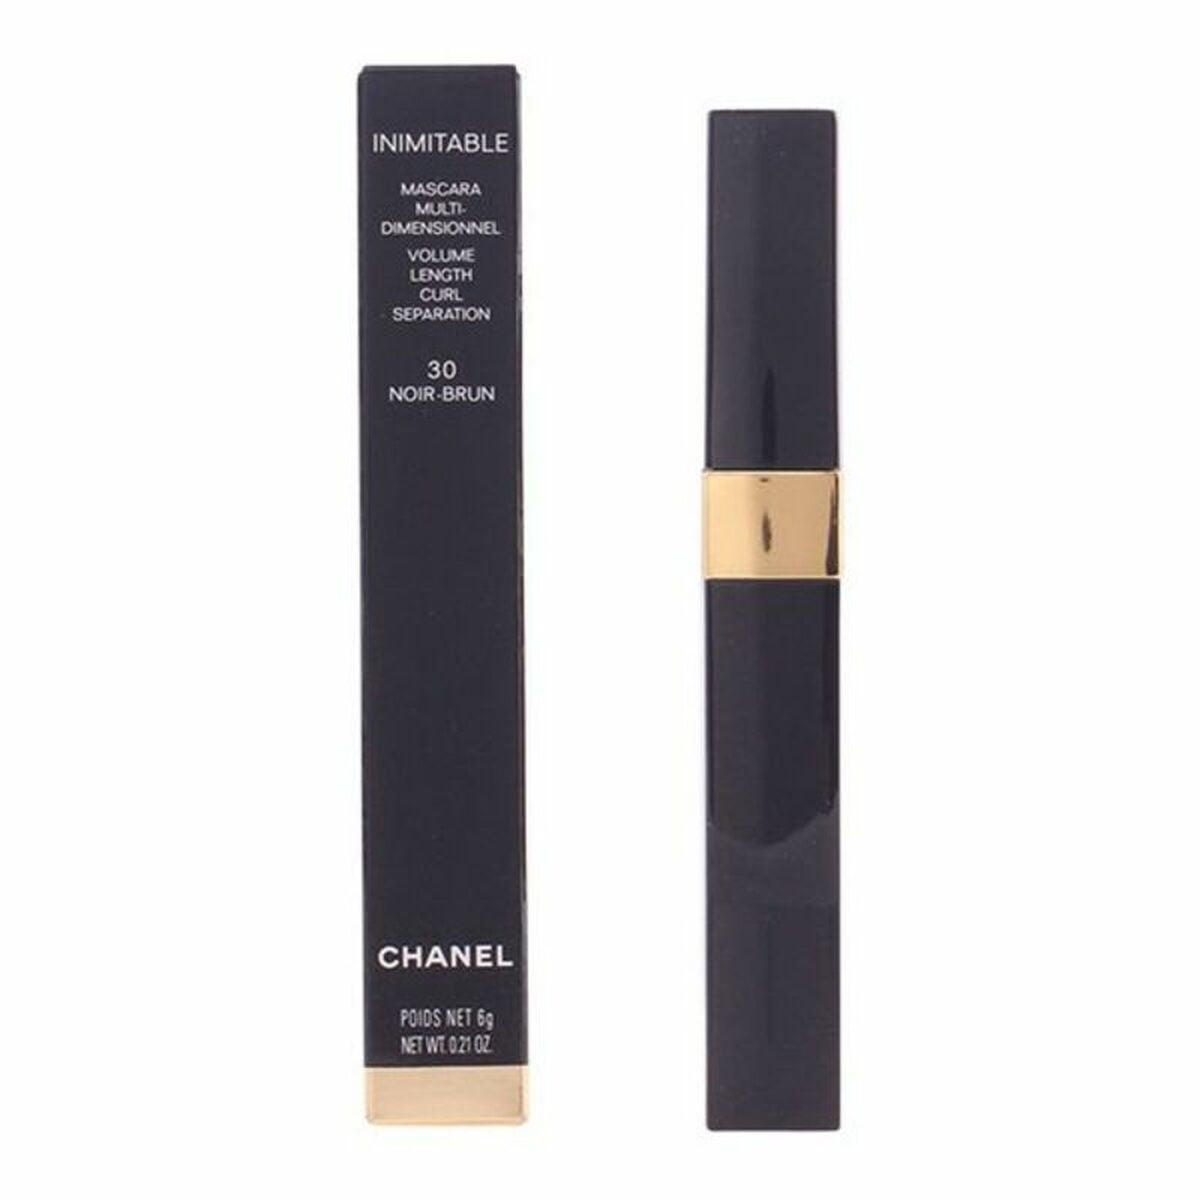 Mascara Inimitable Chanel 6 g-1